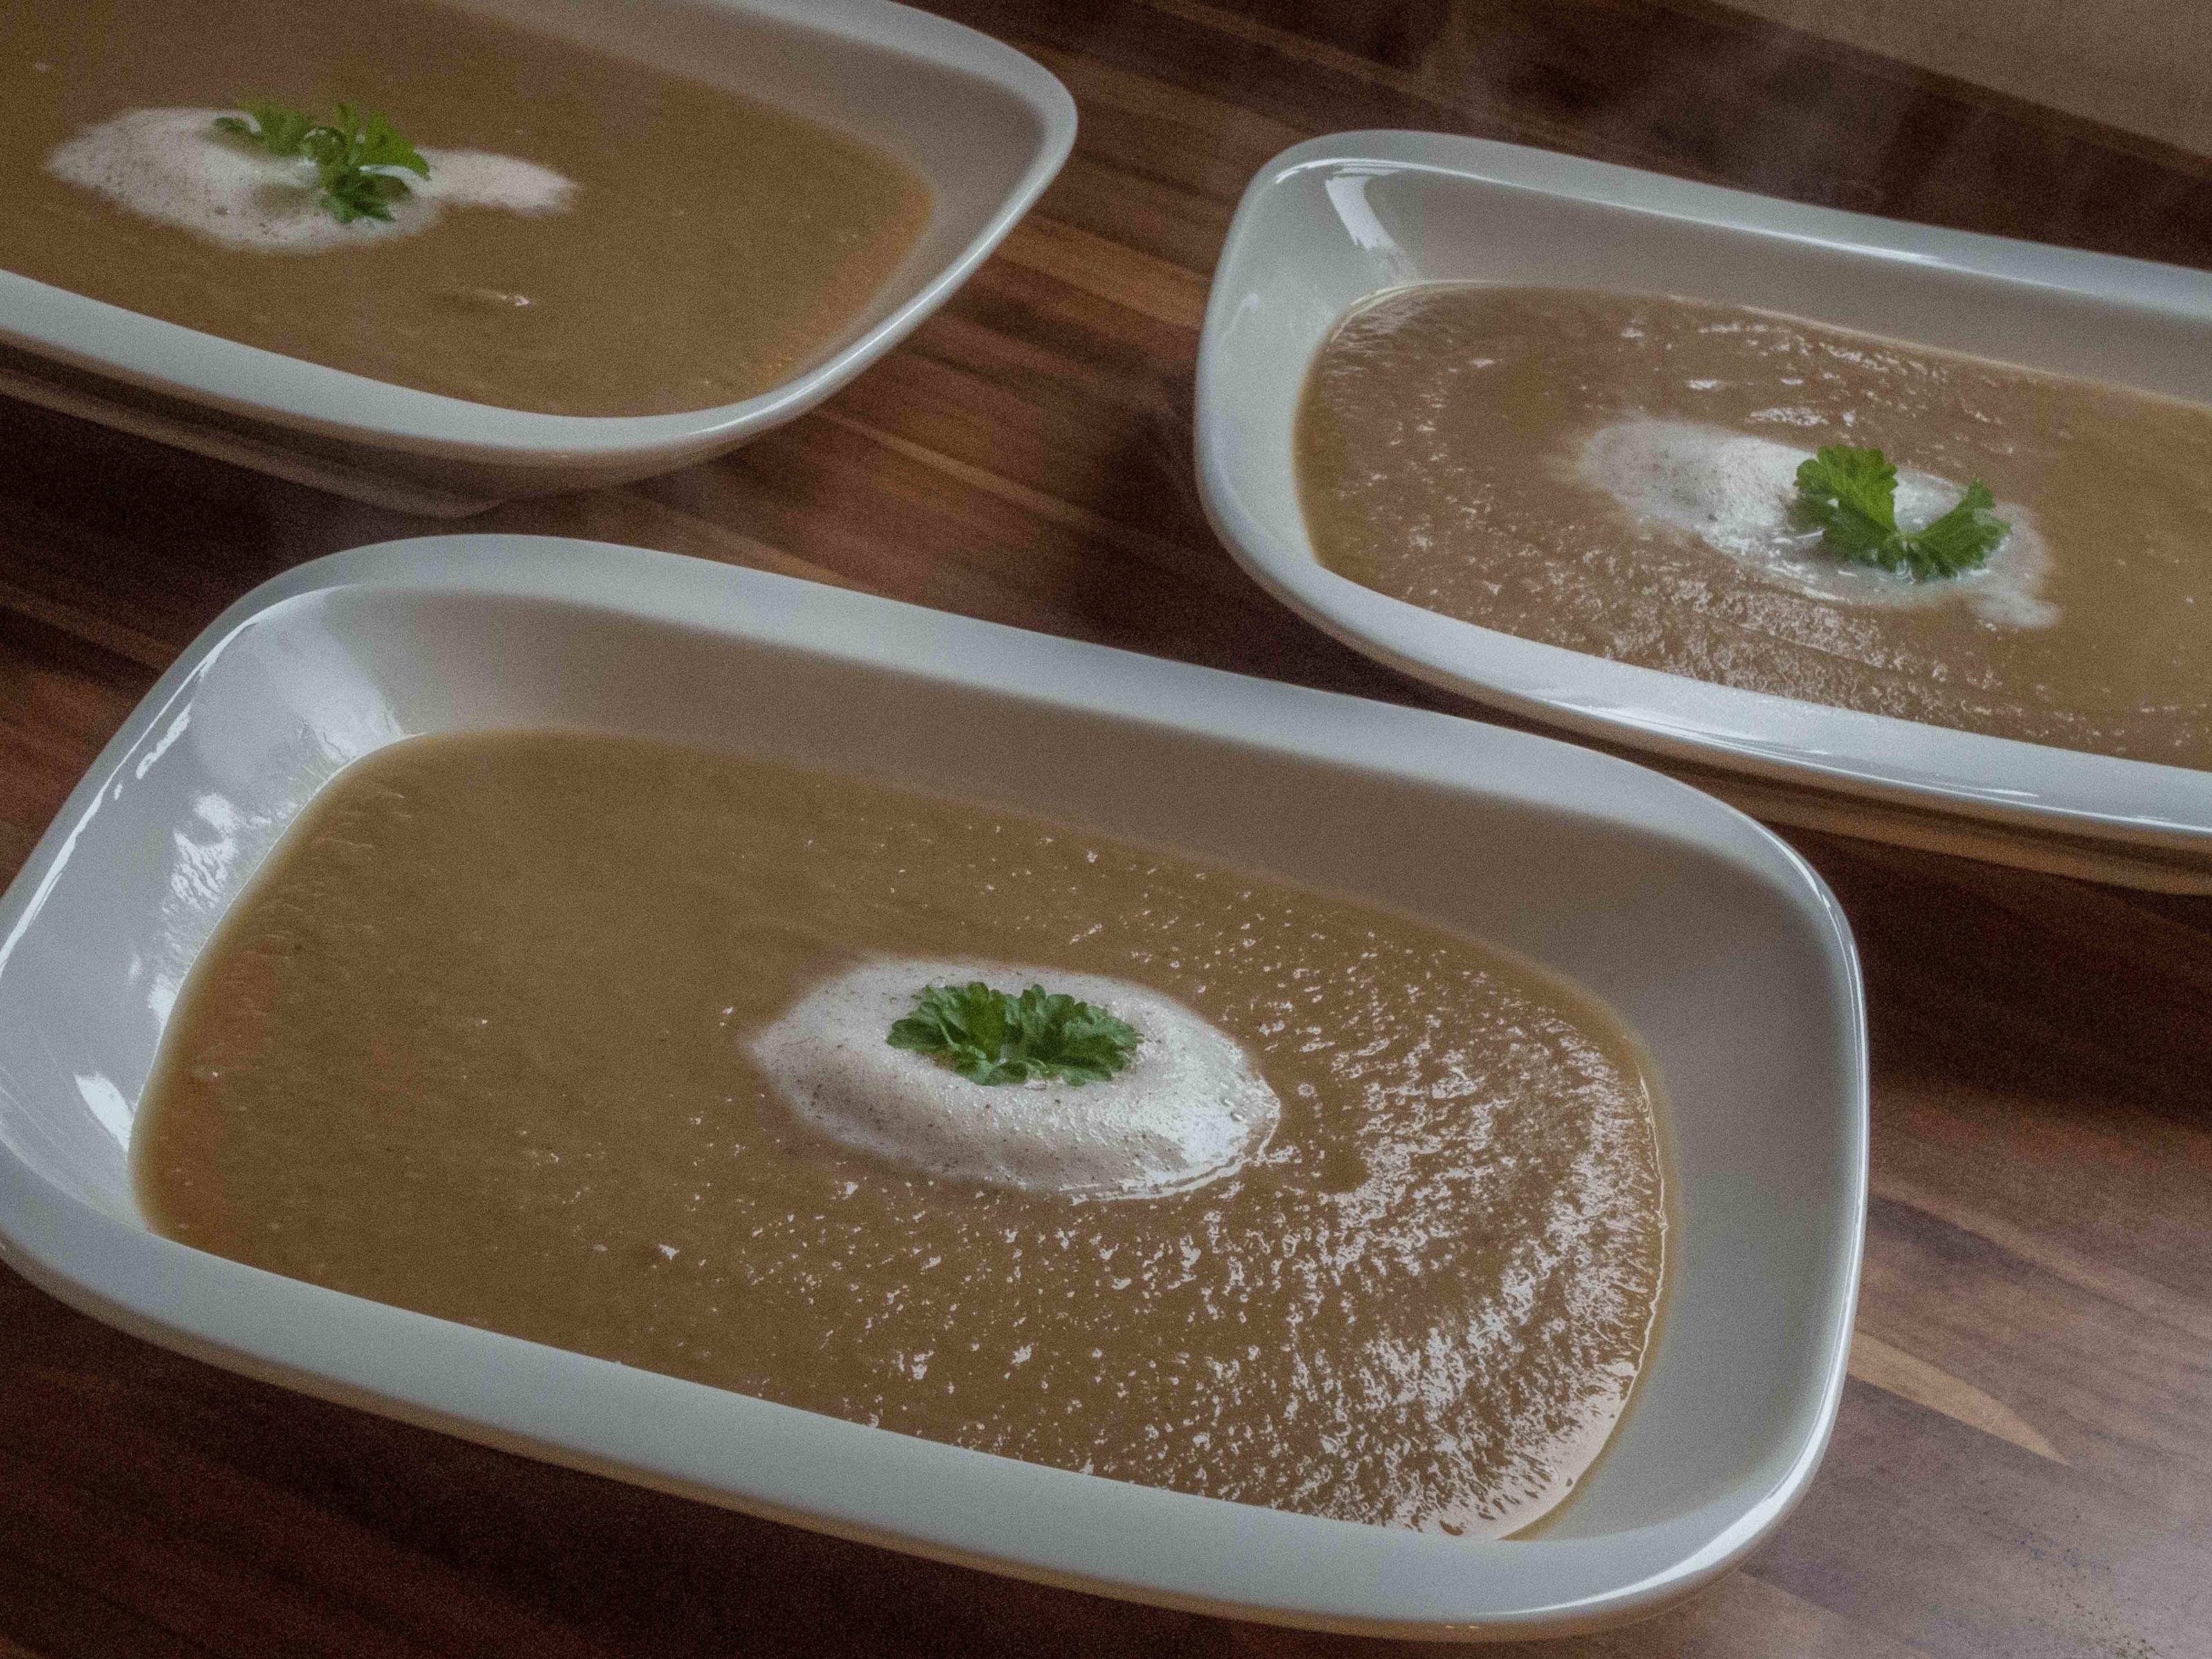 Bilder für Suppenküche: Maronensuppe mit Zimtschaum - Rezept